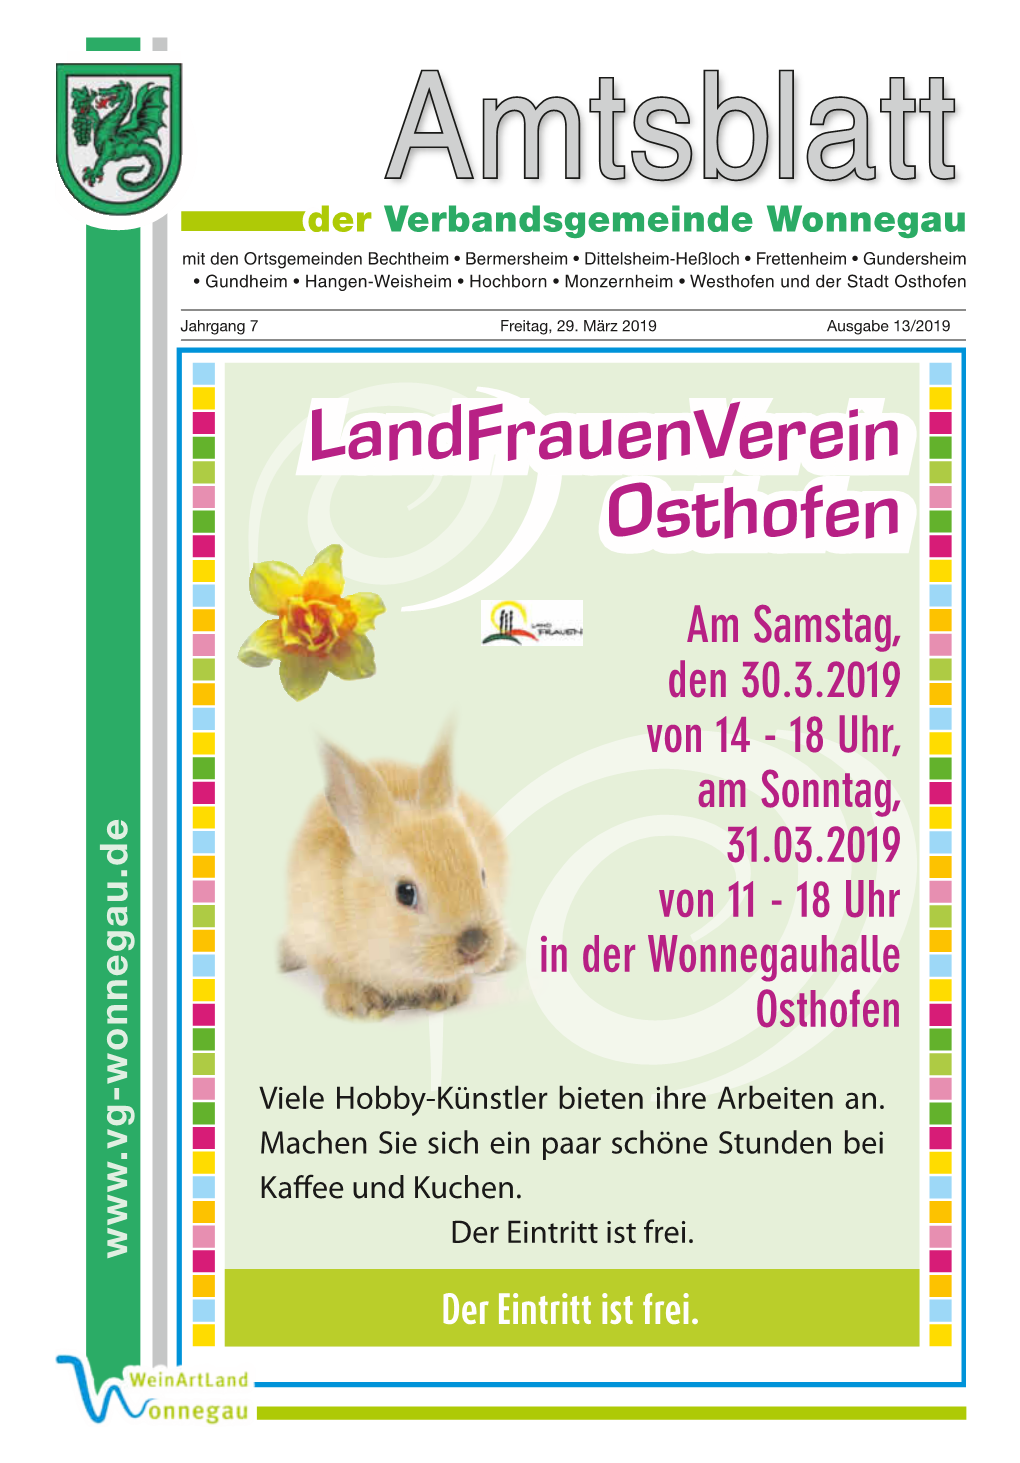 Landfrauenverein Osthofen Am Samstag, Den 30.3.2019 Von 14 - 18 Uhr, Am Sonntag, 31.03.2019 Von 11 - 18 Uhr in Der Wonnegauhalle Osthofen